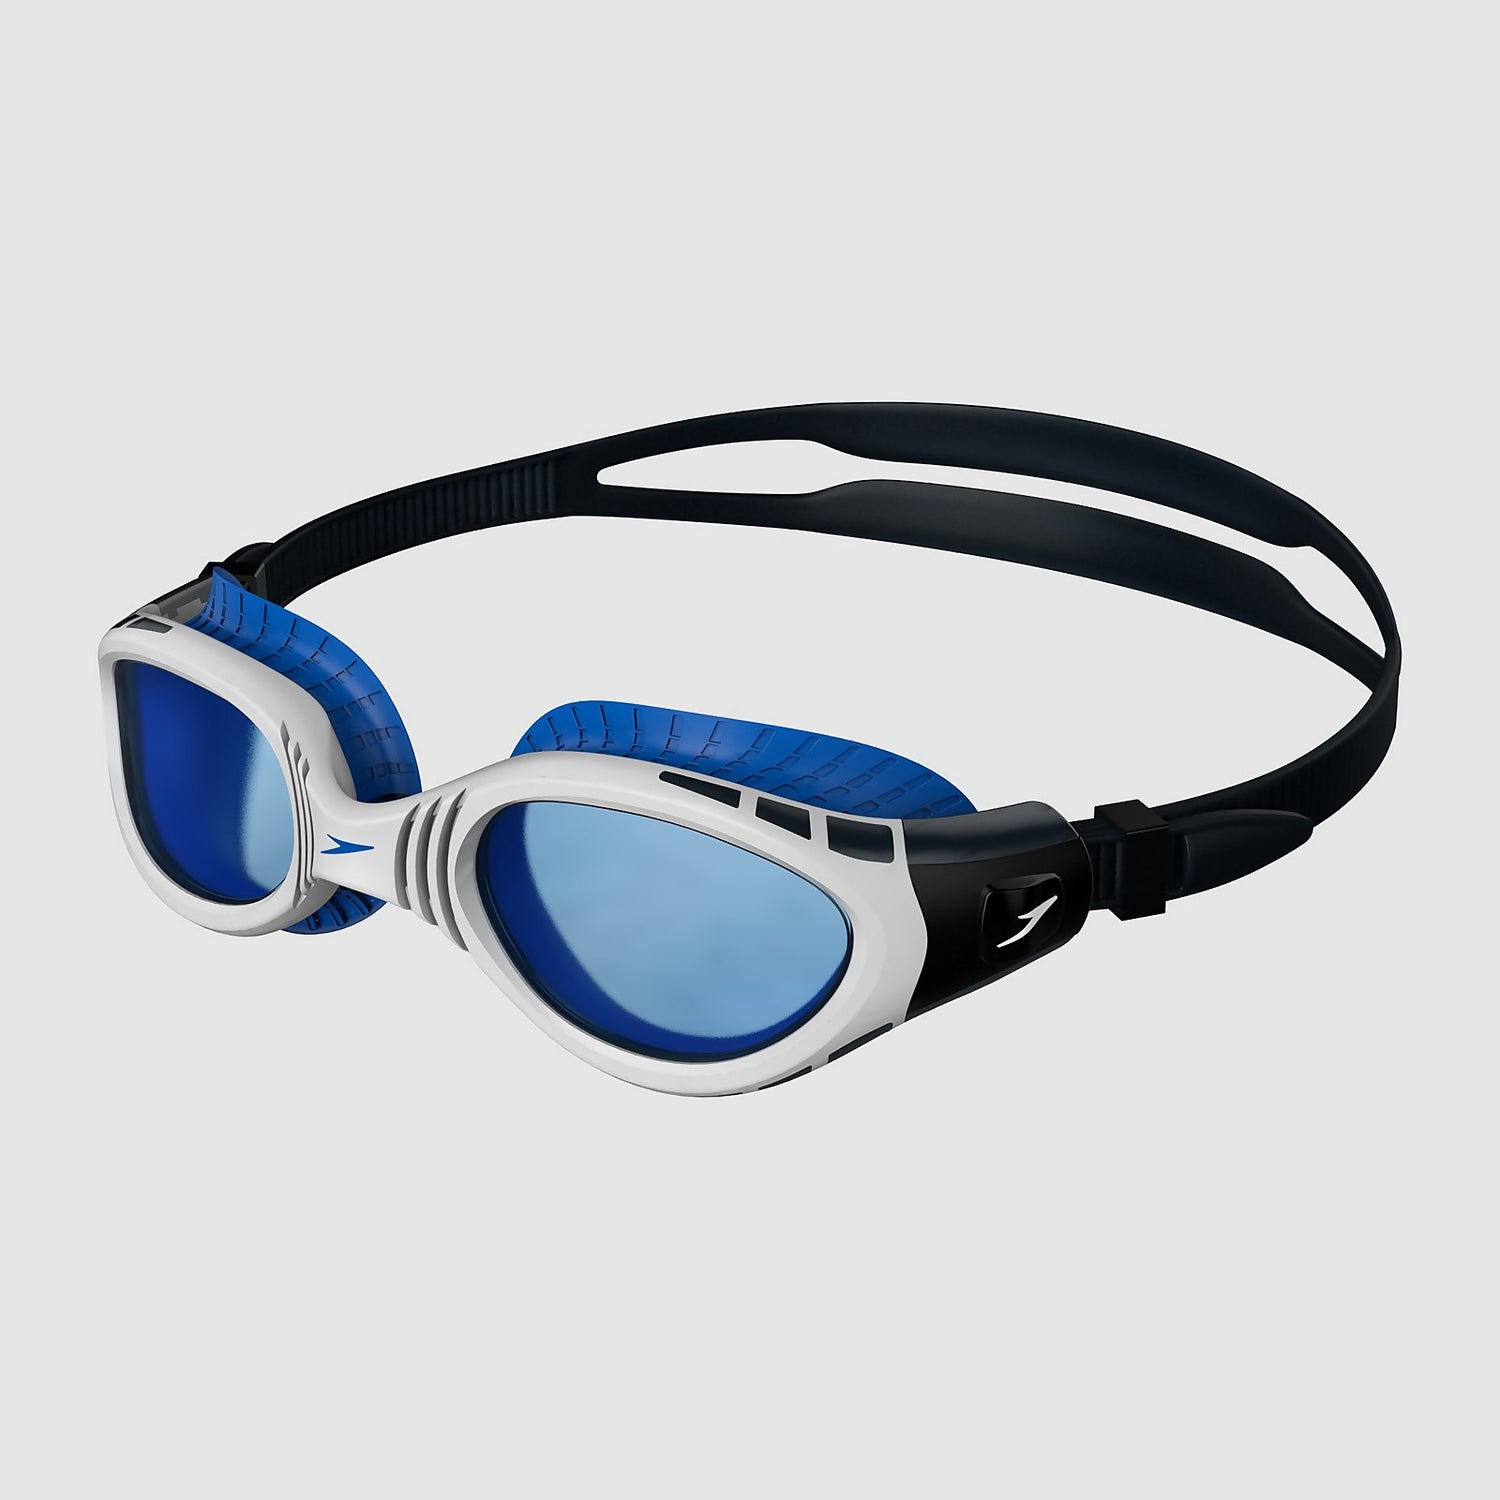 Speedo Adult Unisex Futura Biofuse Flexiseal Dual Swimming Goggles 